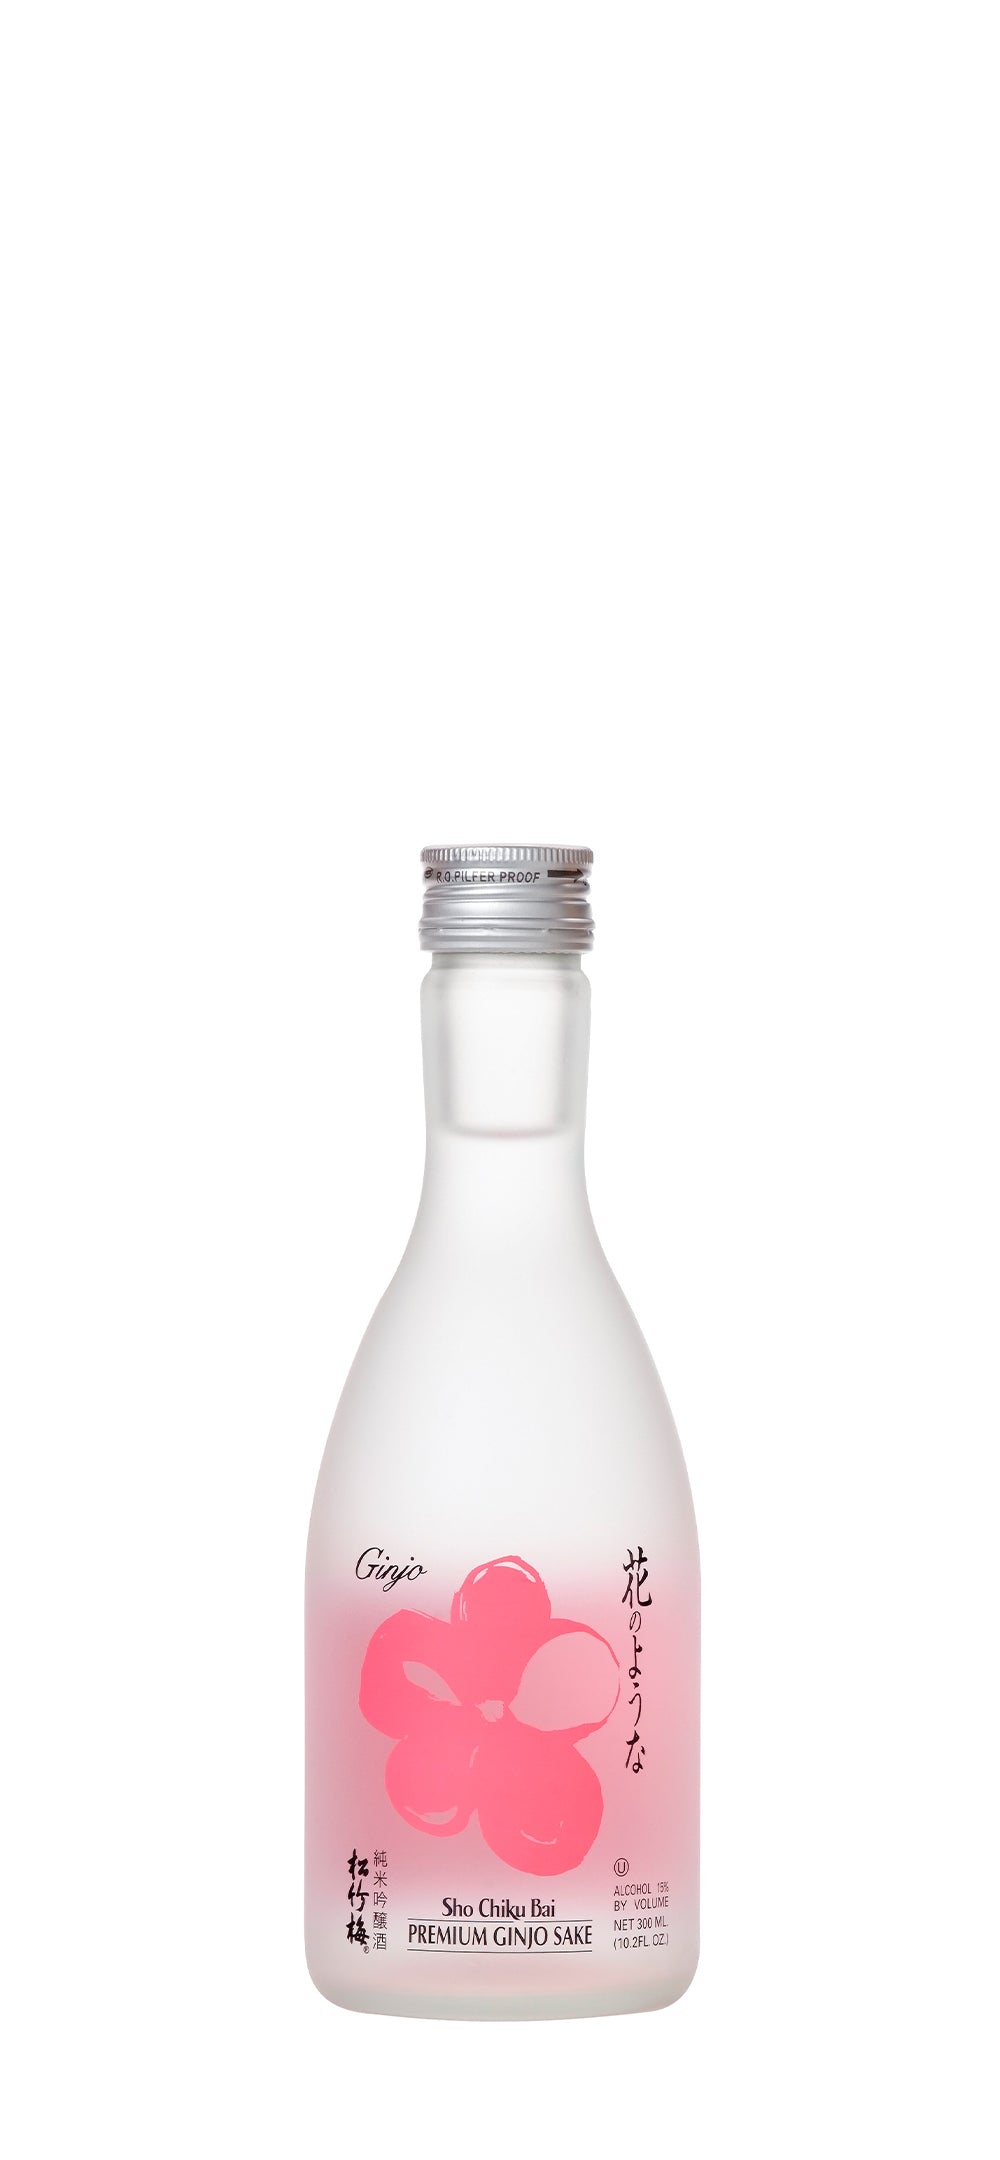 SHO CHIKU BAI Premium Ginjo Sake 300 ml